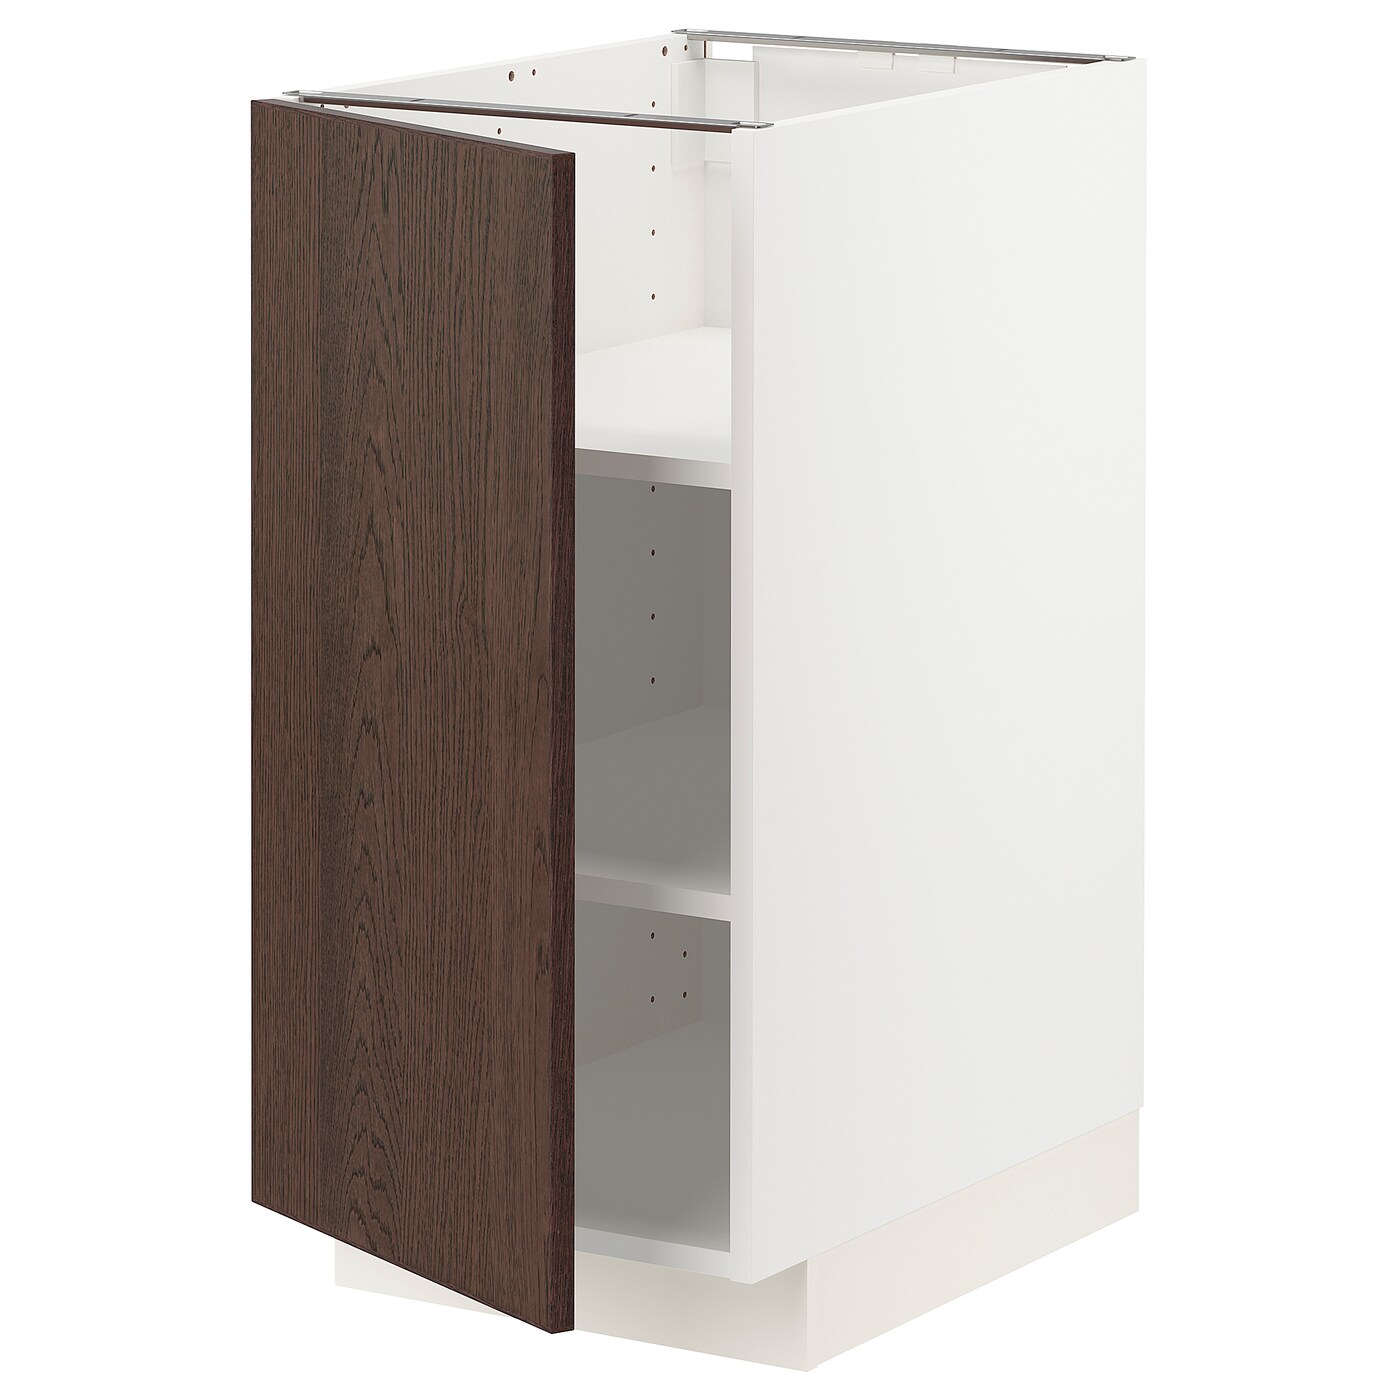 Напольный кухонный шкаф  - IKEA METOD, 88x62x40см, белый/темно-коричневый, МЕТОД ИКЕА